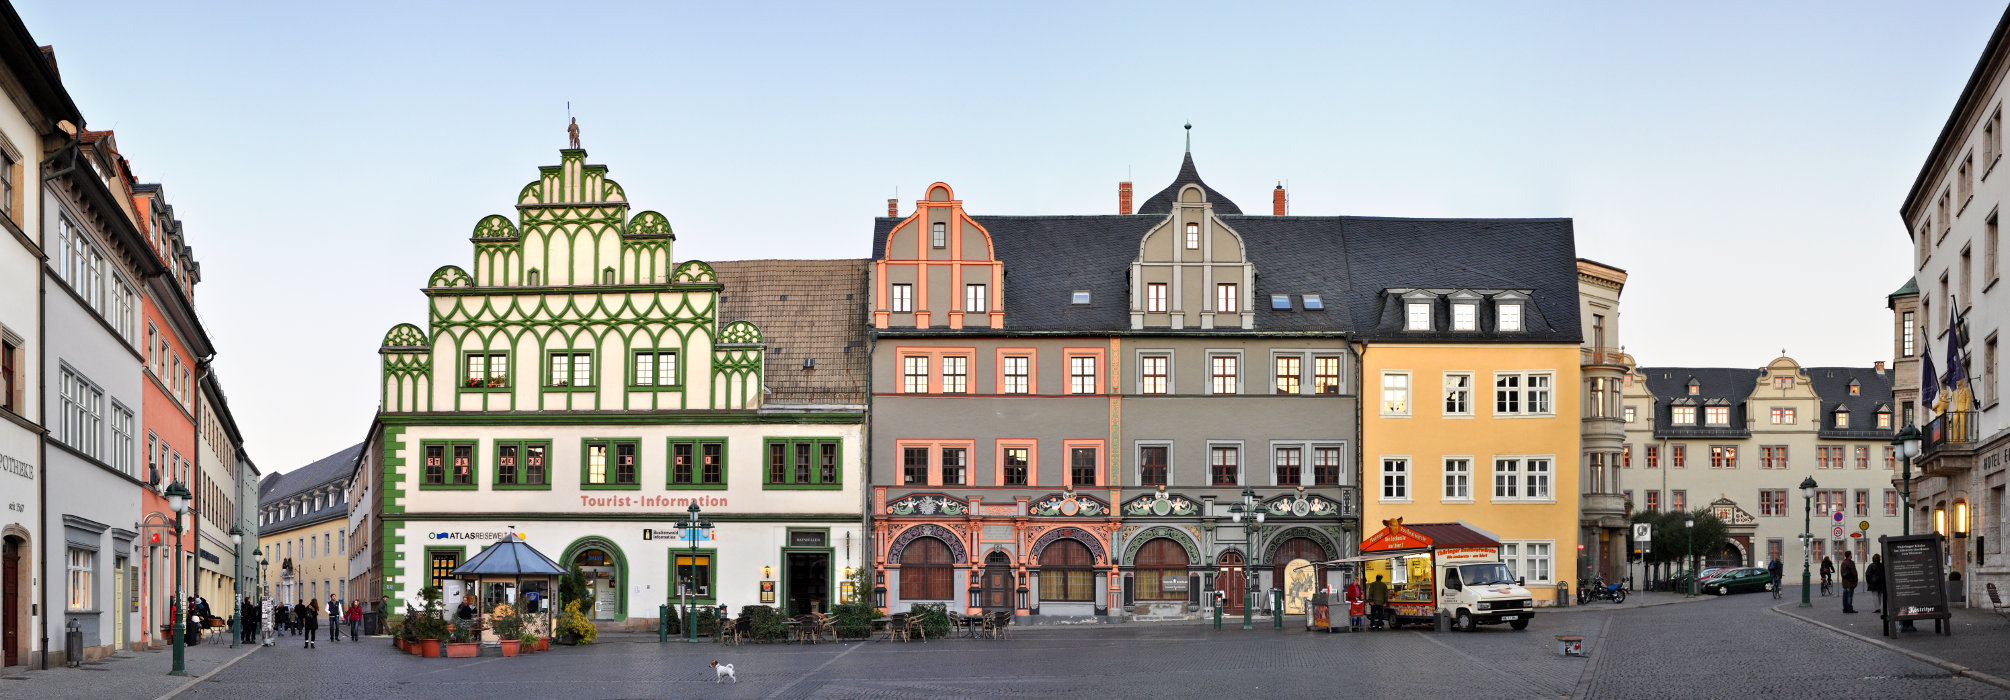 Markt Weimar Cranachhaus Architektur